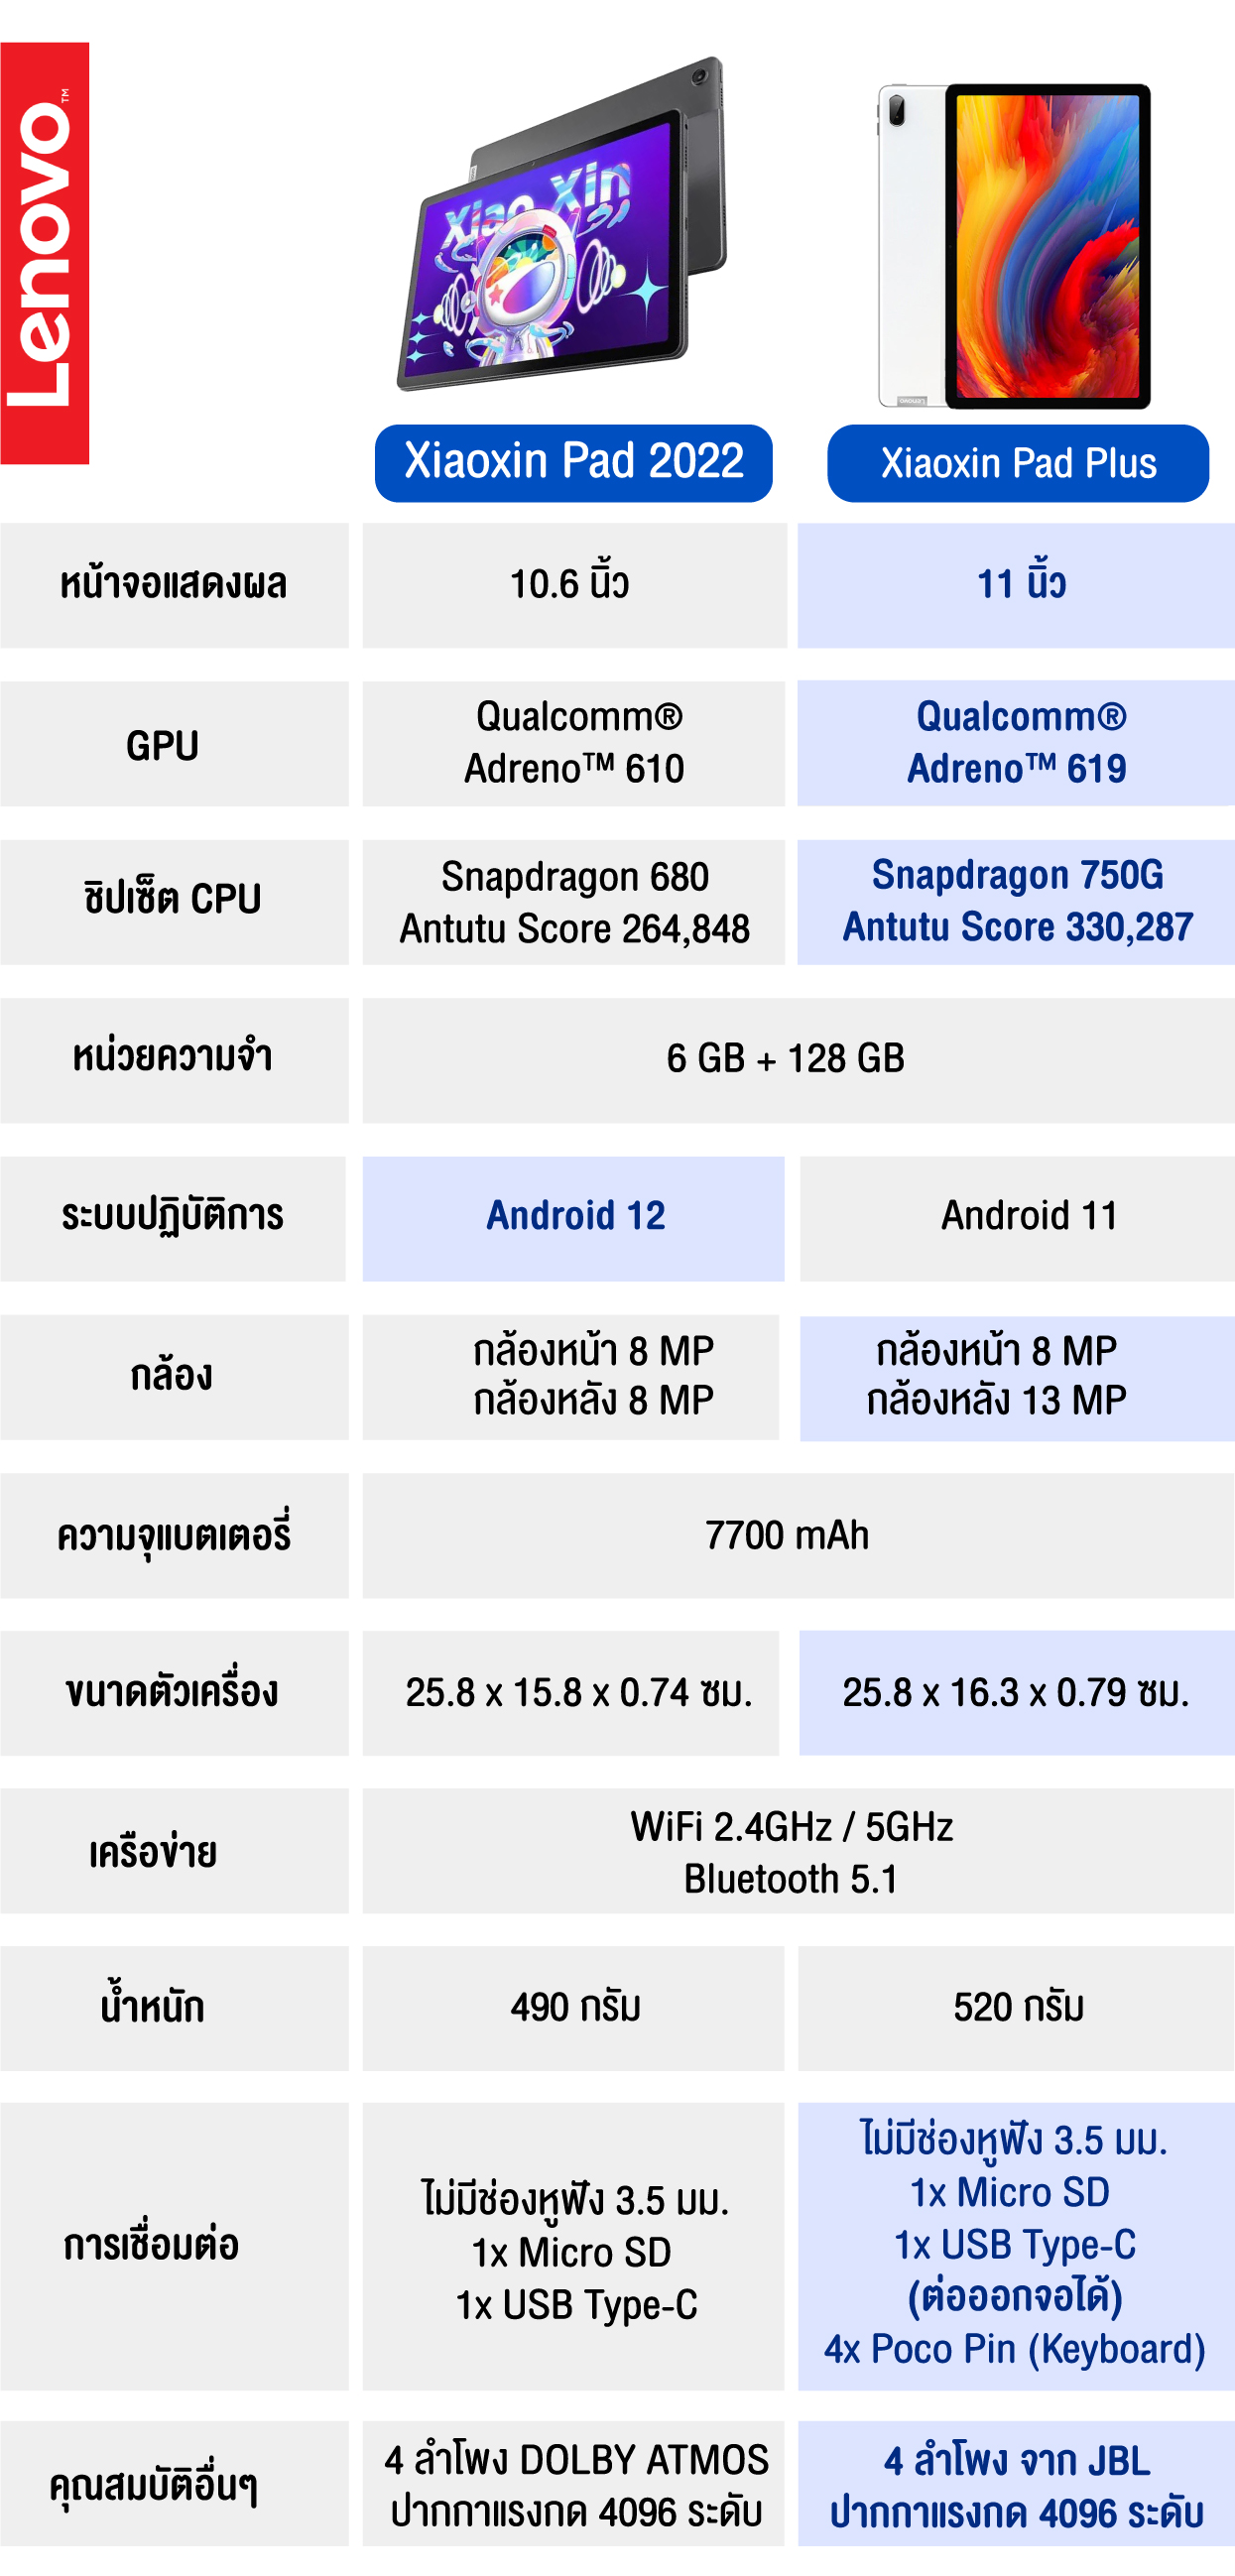 มุมมองเพิ่มเติมของสินค้า [Global ROM] Lenovo Xiaoxin Pad Plus 11นิ้ว แท็บเล็ต WiFi TB-J607F 6GB + 128GB Qmm Snapdragon 750G Octa core Android [ประกันในไทย 1 ปี , ส่งจากไทย,สามารถออกใบกำกับภาษีได้]